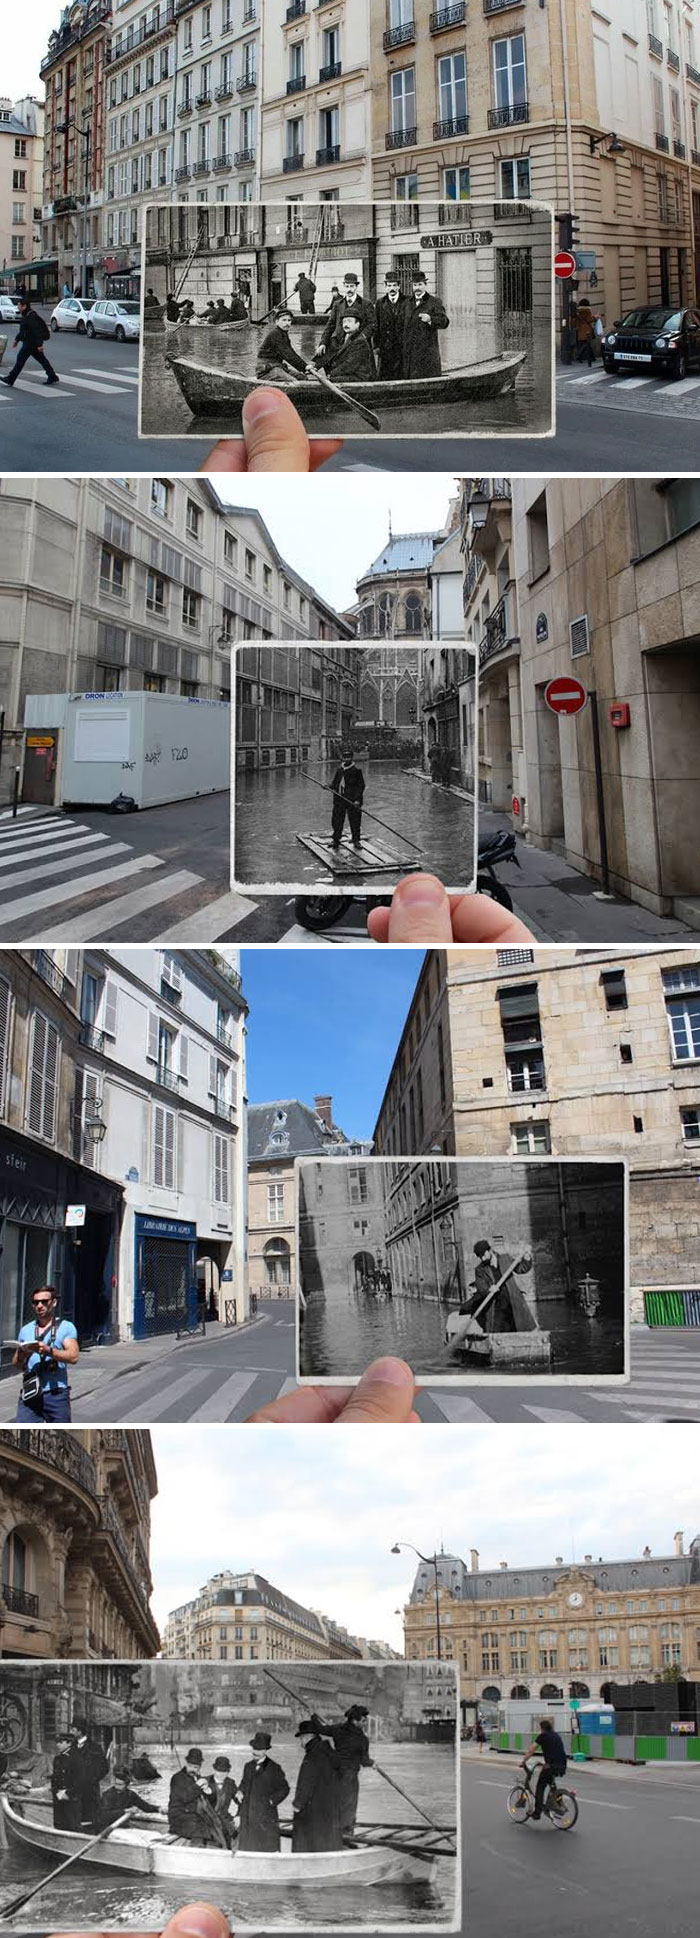 Loạt ảnh ngày ấy - bây giờ chụp những con phố trên khắp thế giới , chứng minh sức ảnh hưởng lớn lao của thời gian - Ảnh 4.